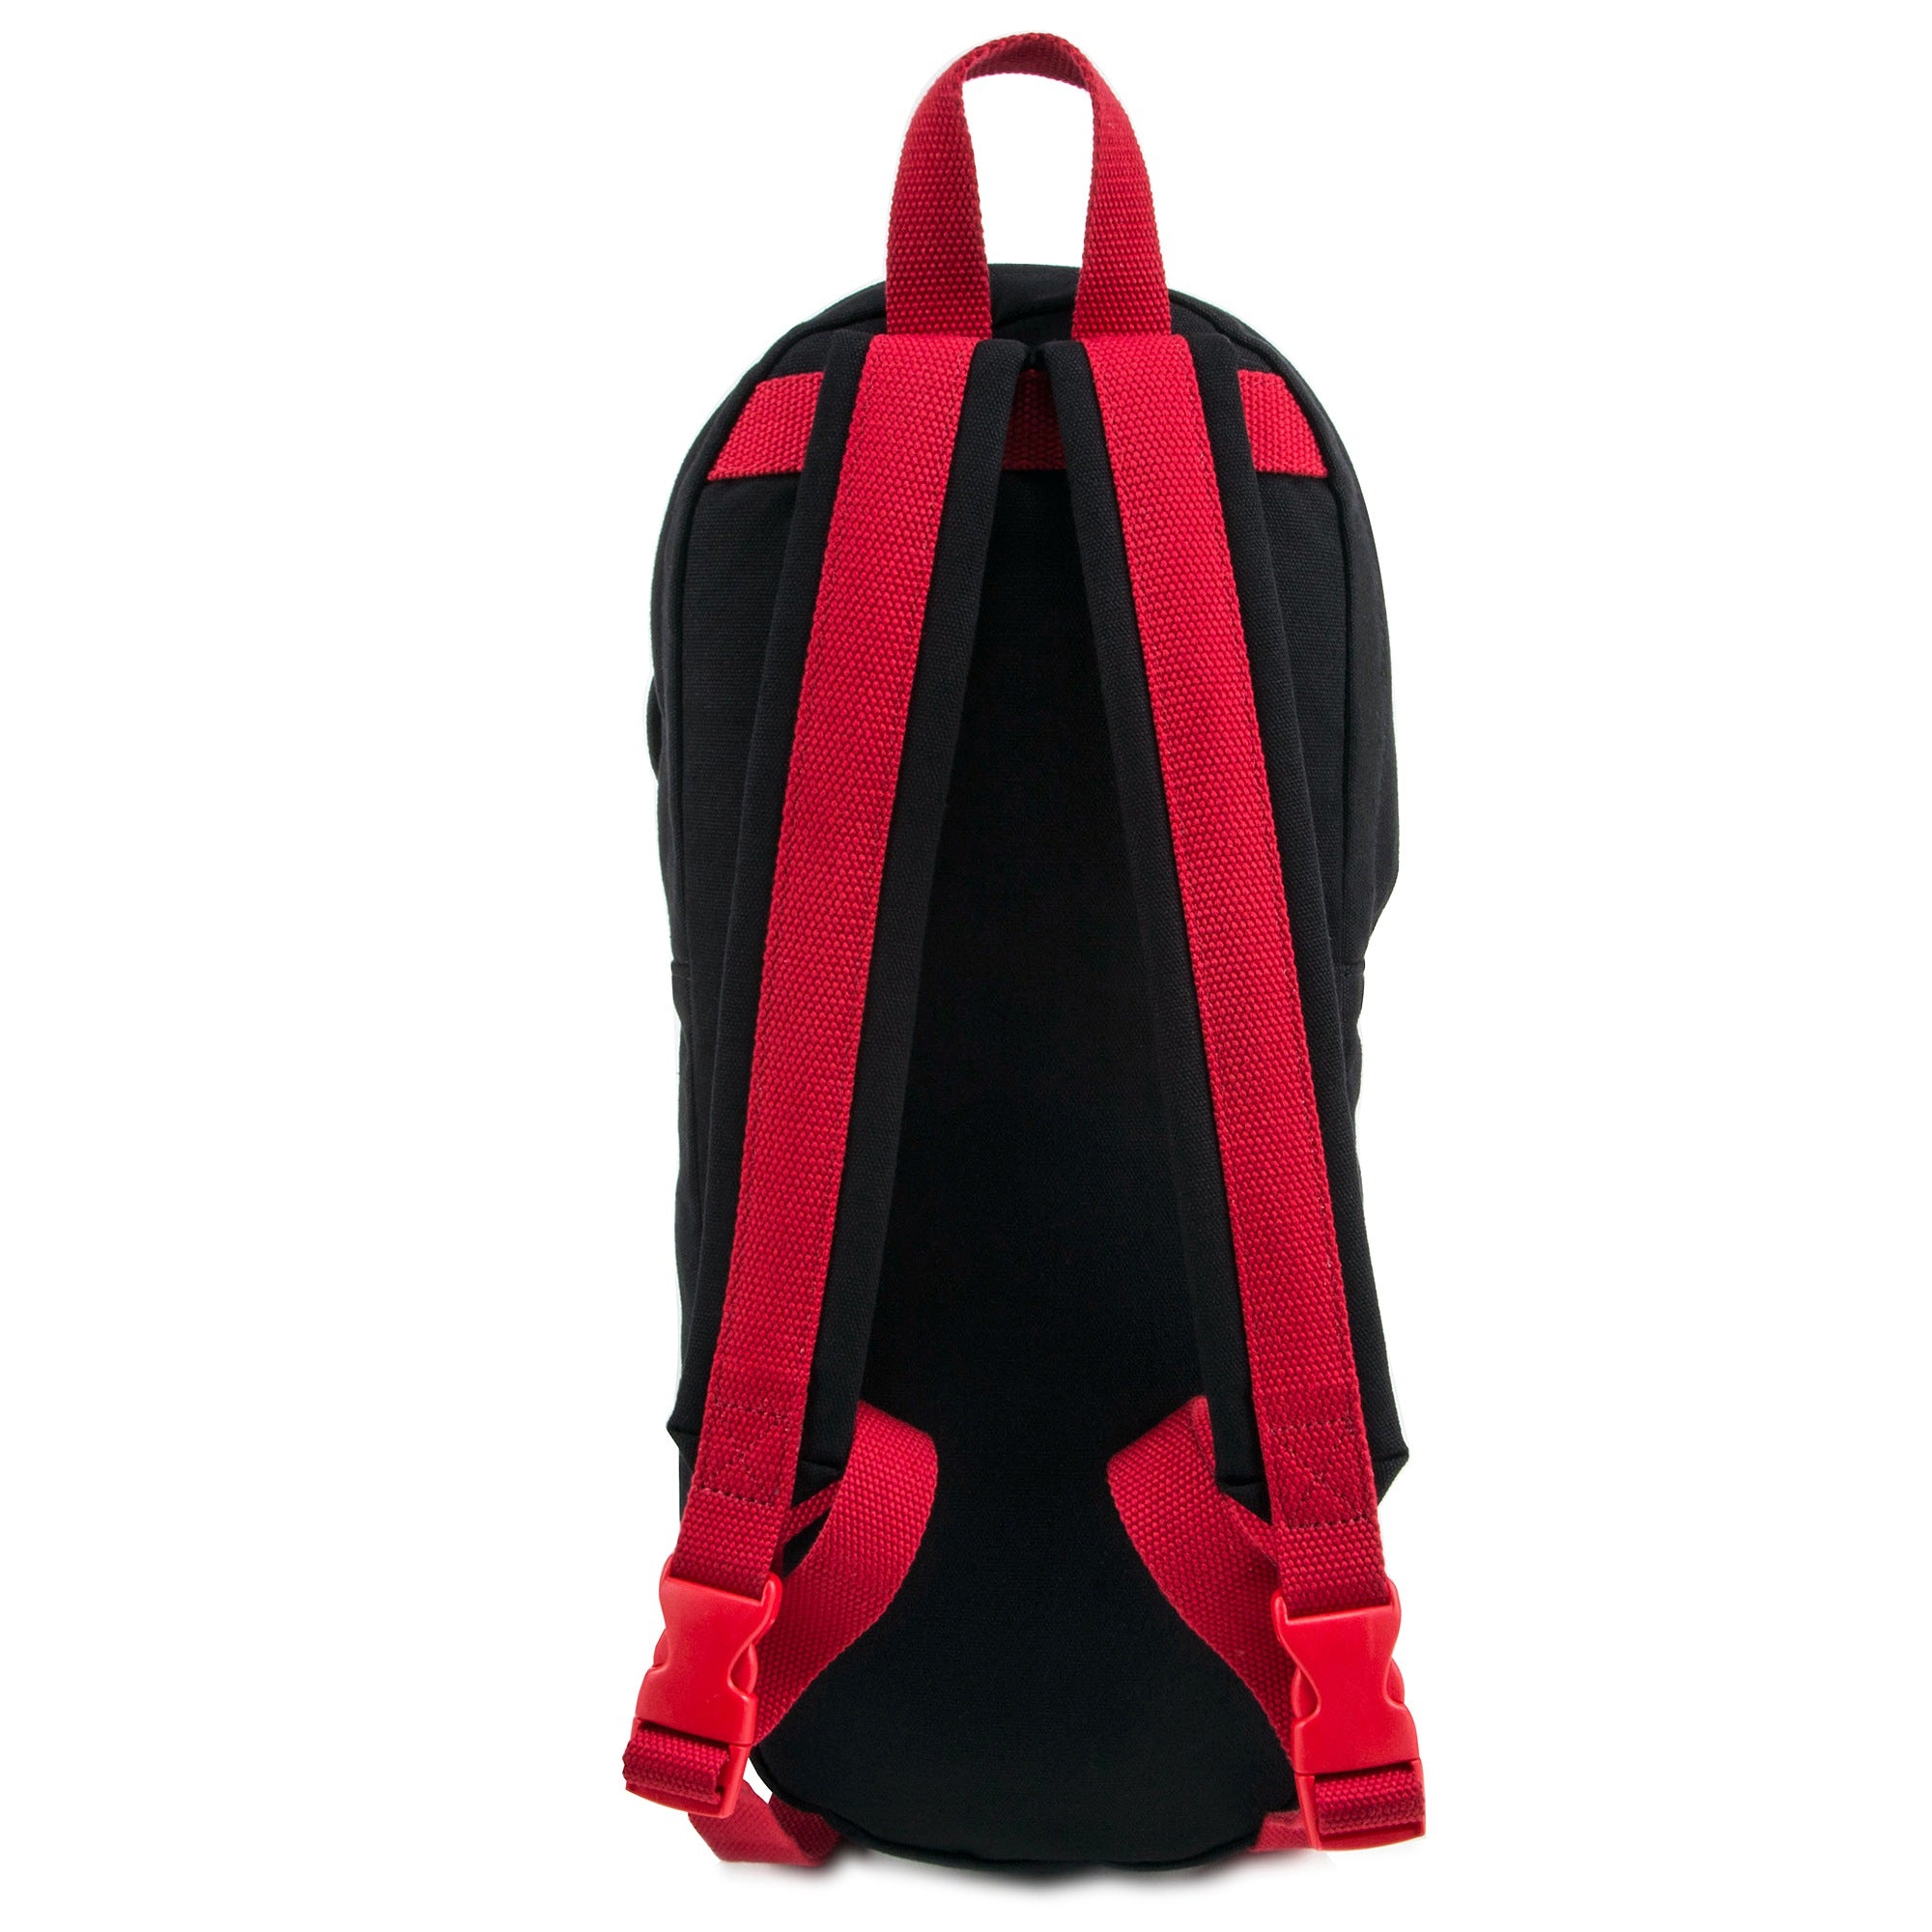 Boys Black "Skate" Backpack (43cm)